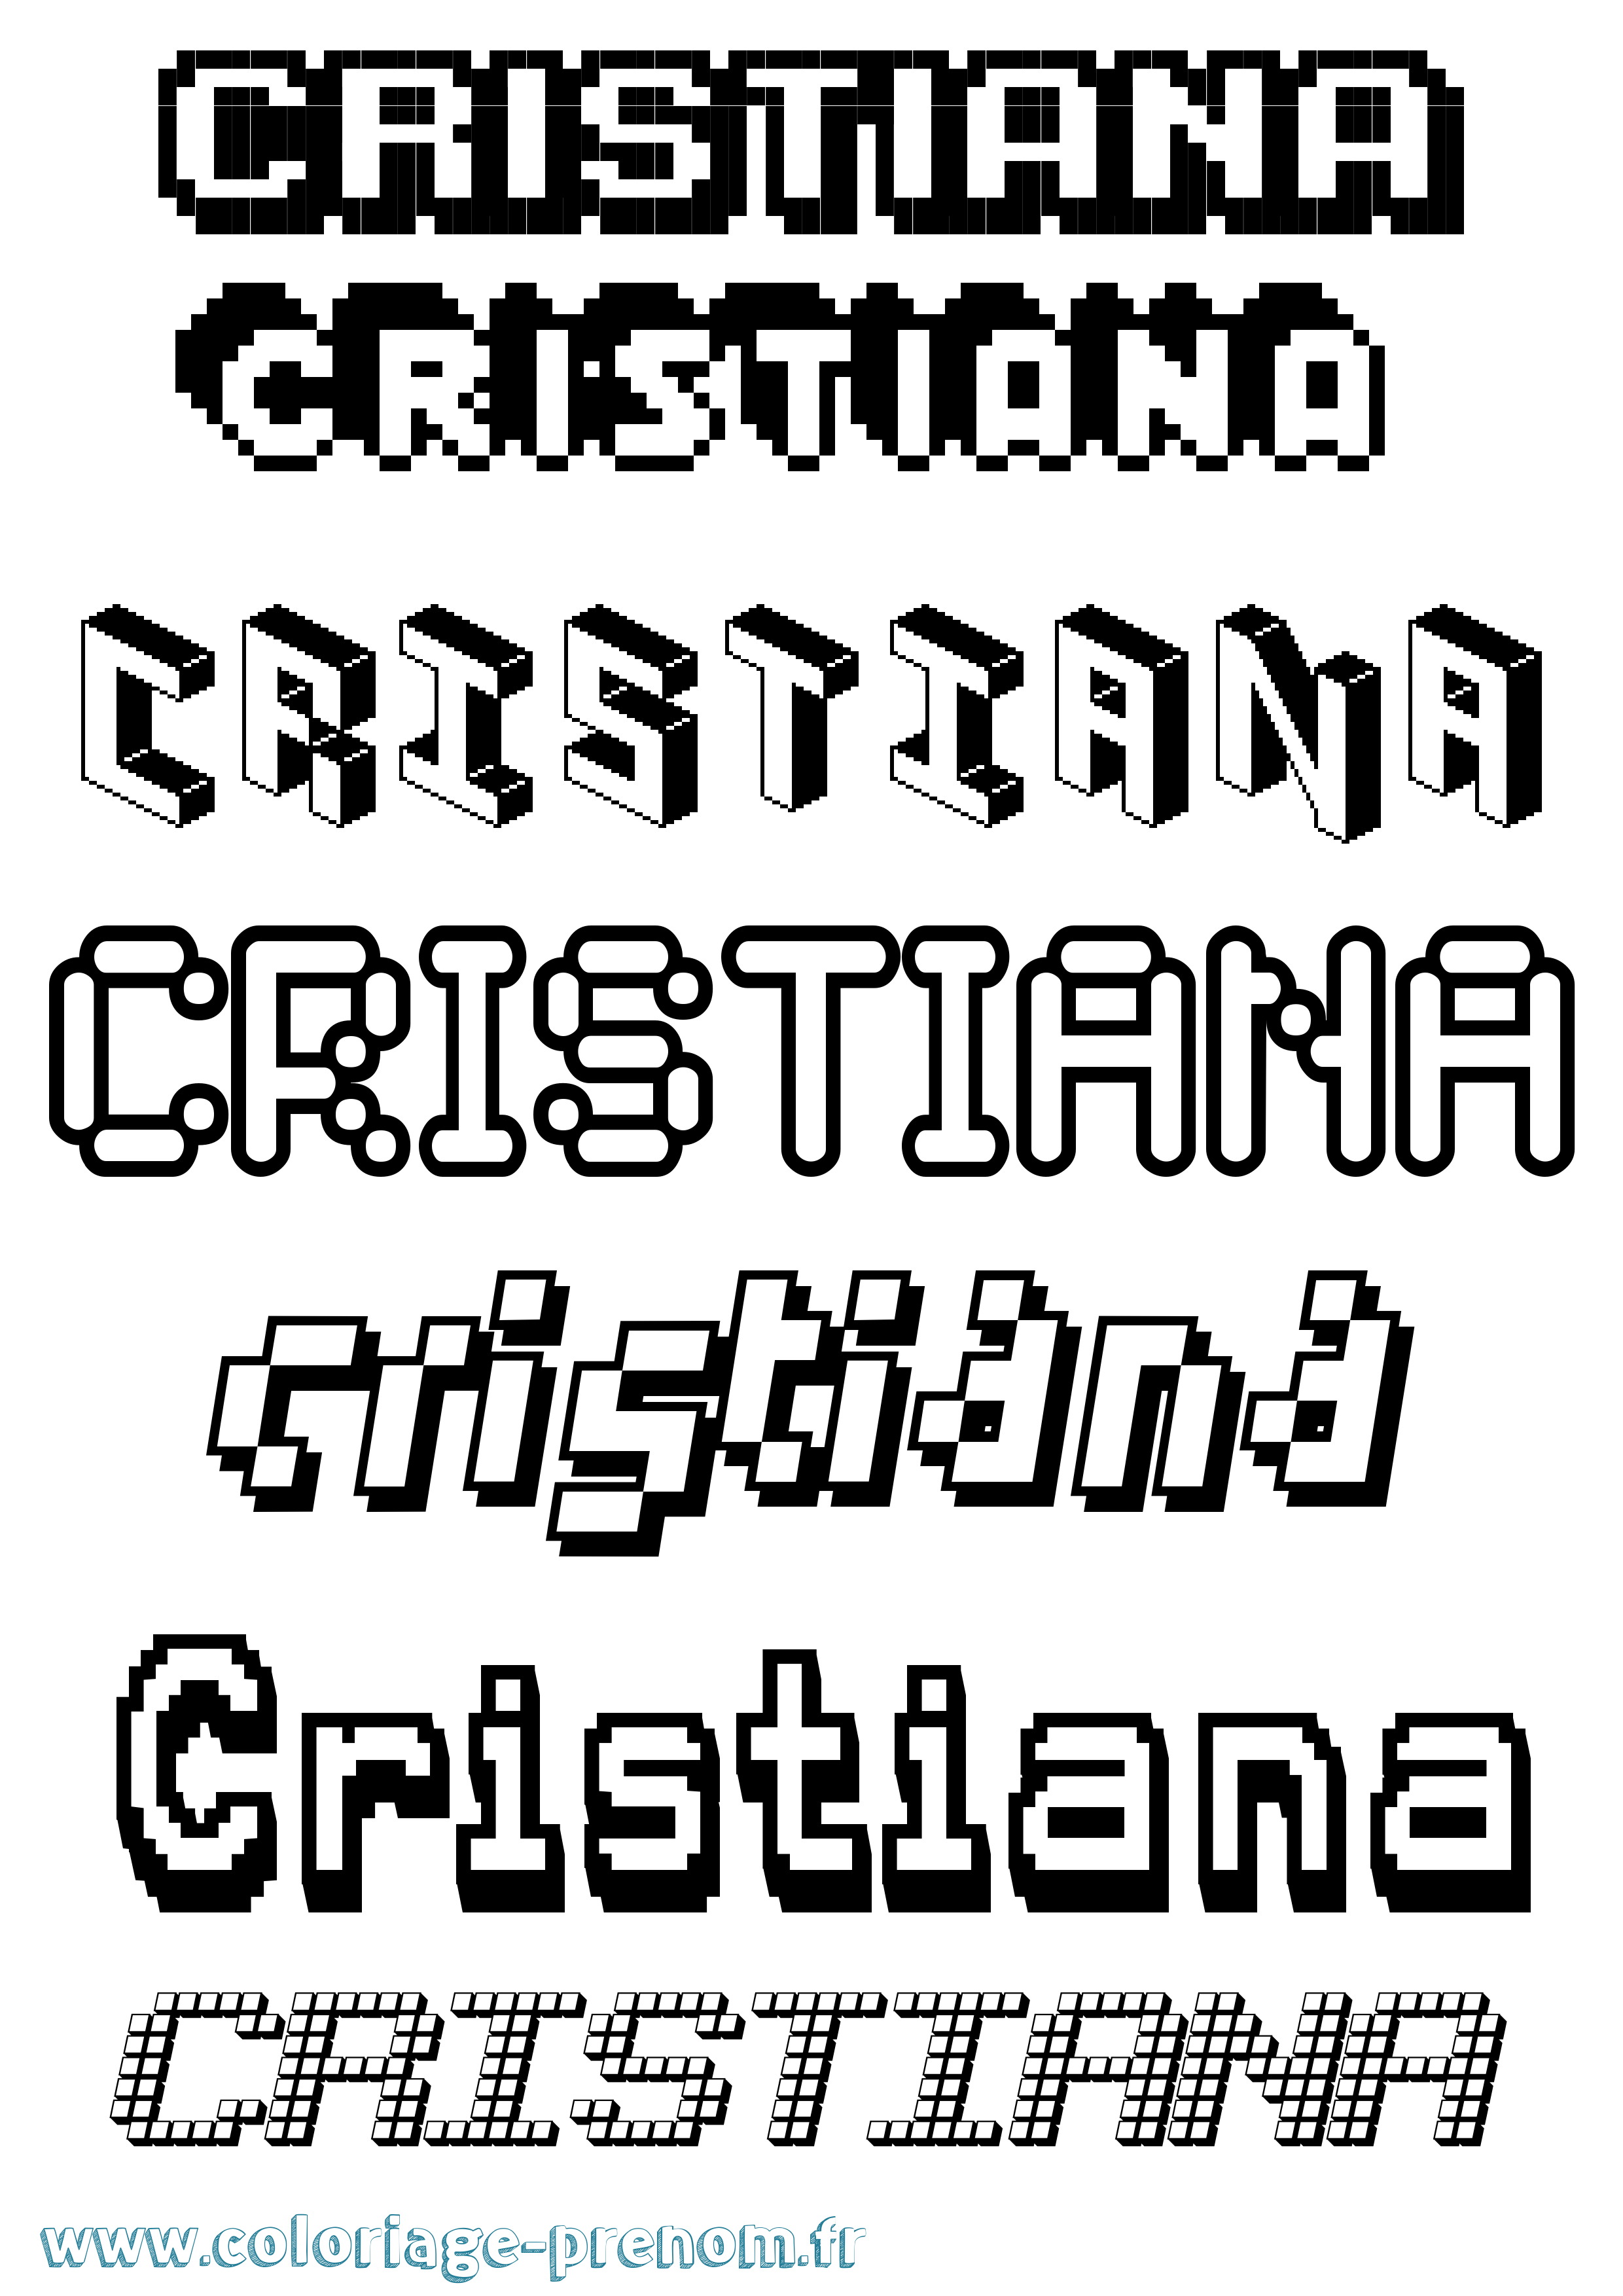 Coloriage prénom Cristiana Pixel